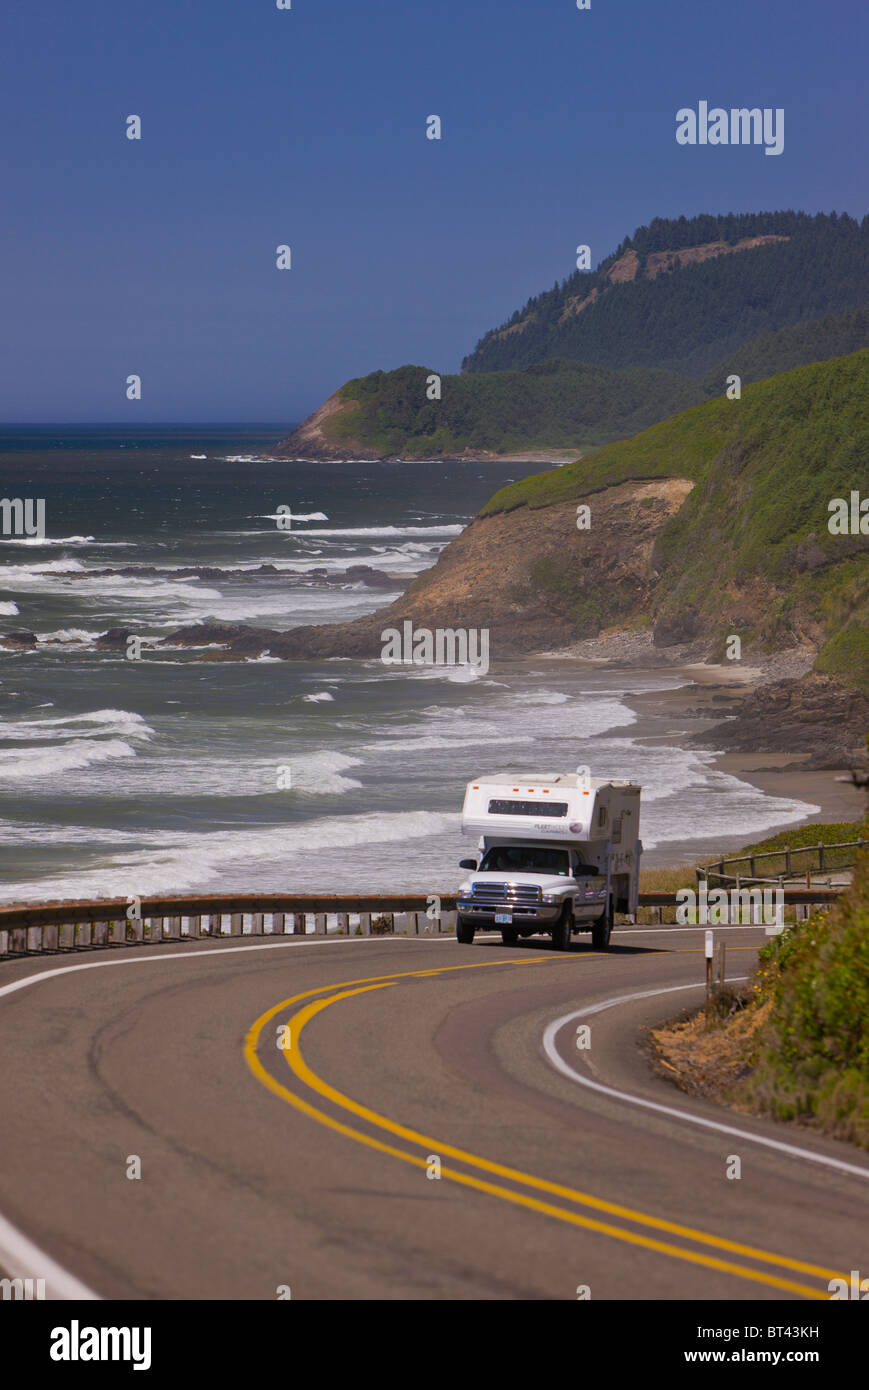 FLORENCE, Oregon, USA - la circulation automobile sur la pittoresque Route 101 sur la côte de l'Oregon central. Banque D'Images